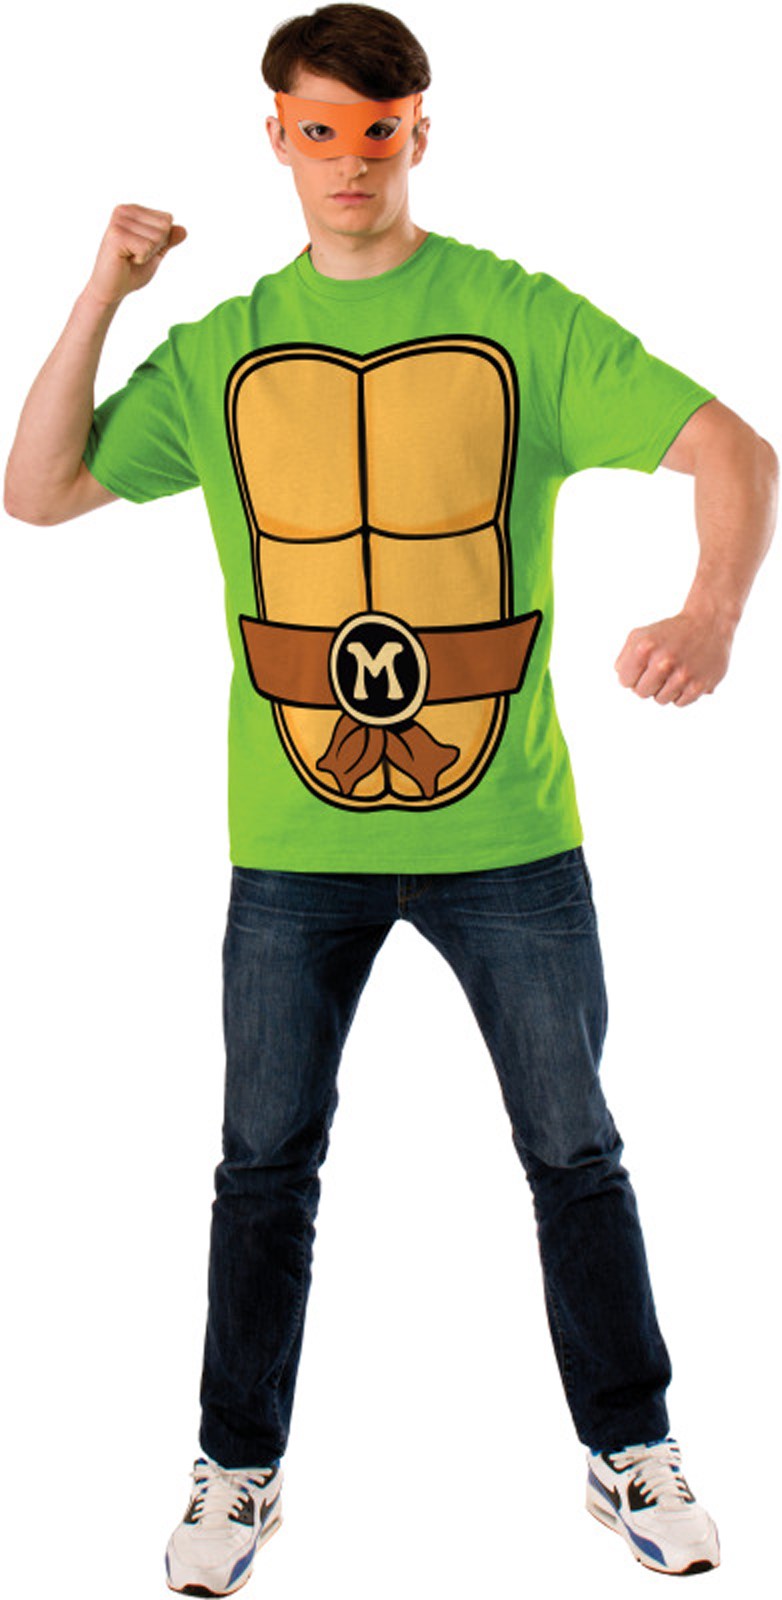 Teenage Mutant Ninja Turtles Michelangelo Adult T-Shirt Kit